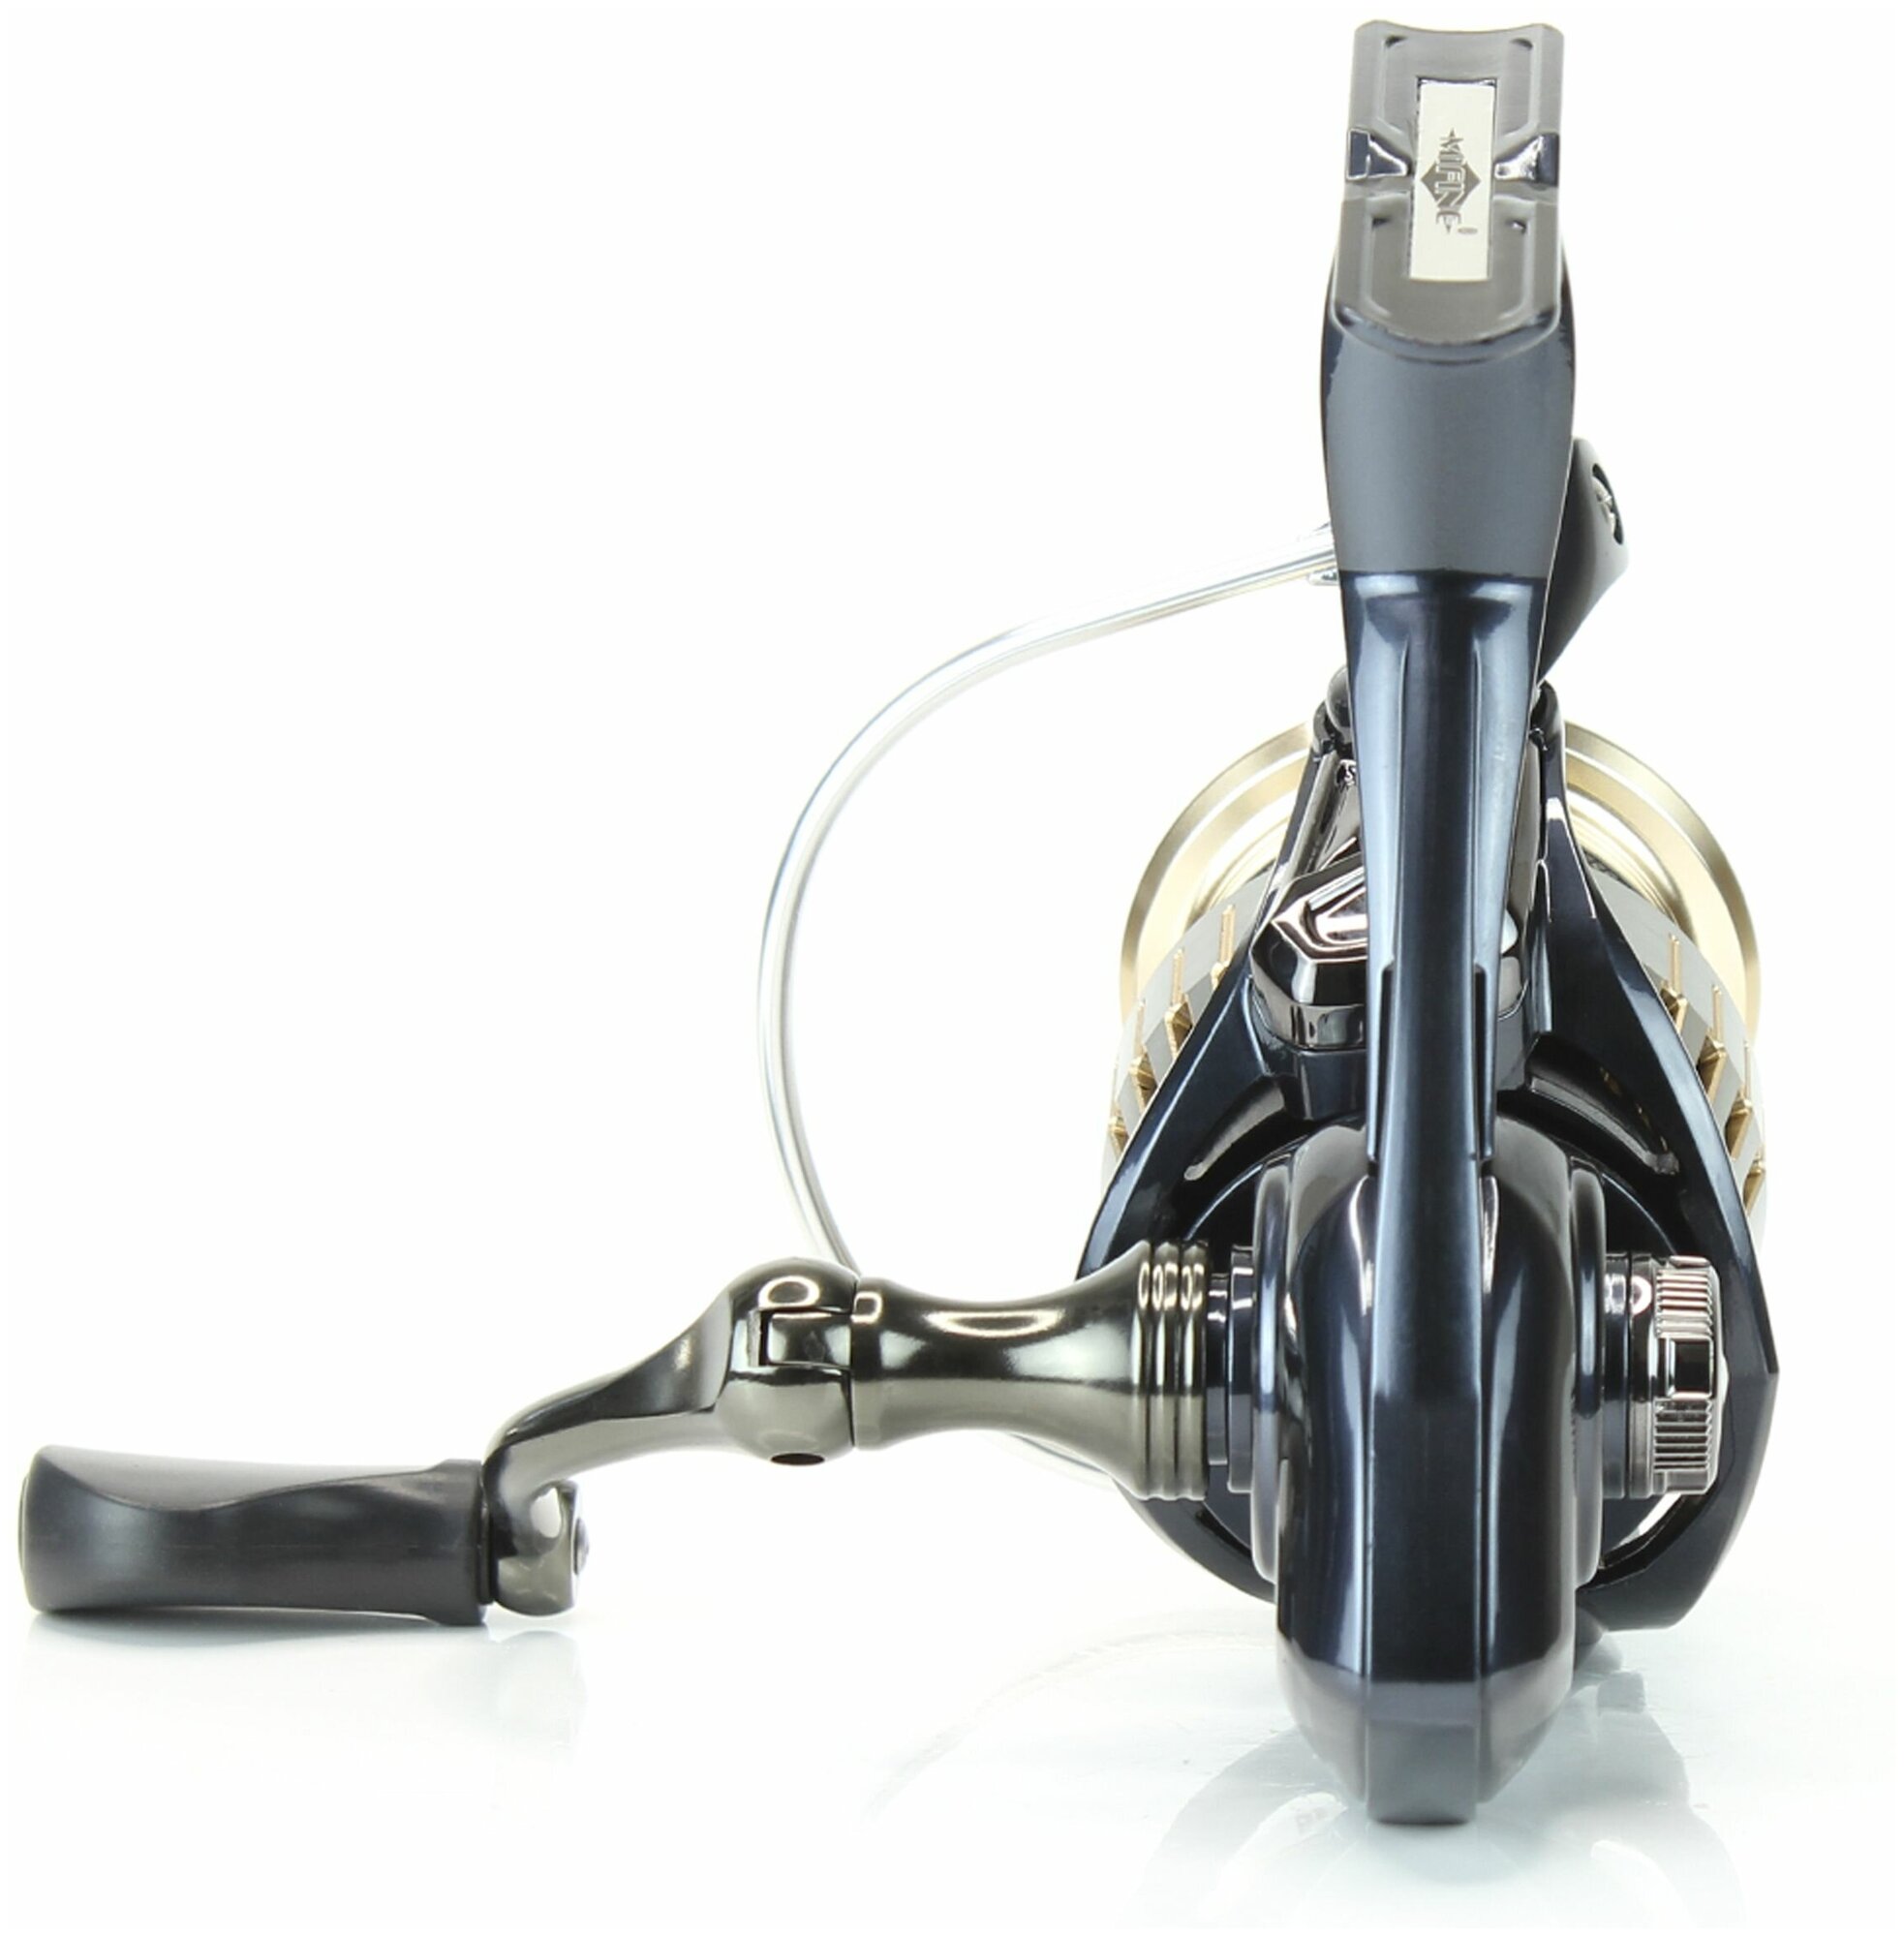 Катушка рыболовная MIFINE X-EXTREM 4000F 5+1 подшипник для спиннинговой ловли для фидерной ловли с металлической шпулей